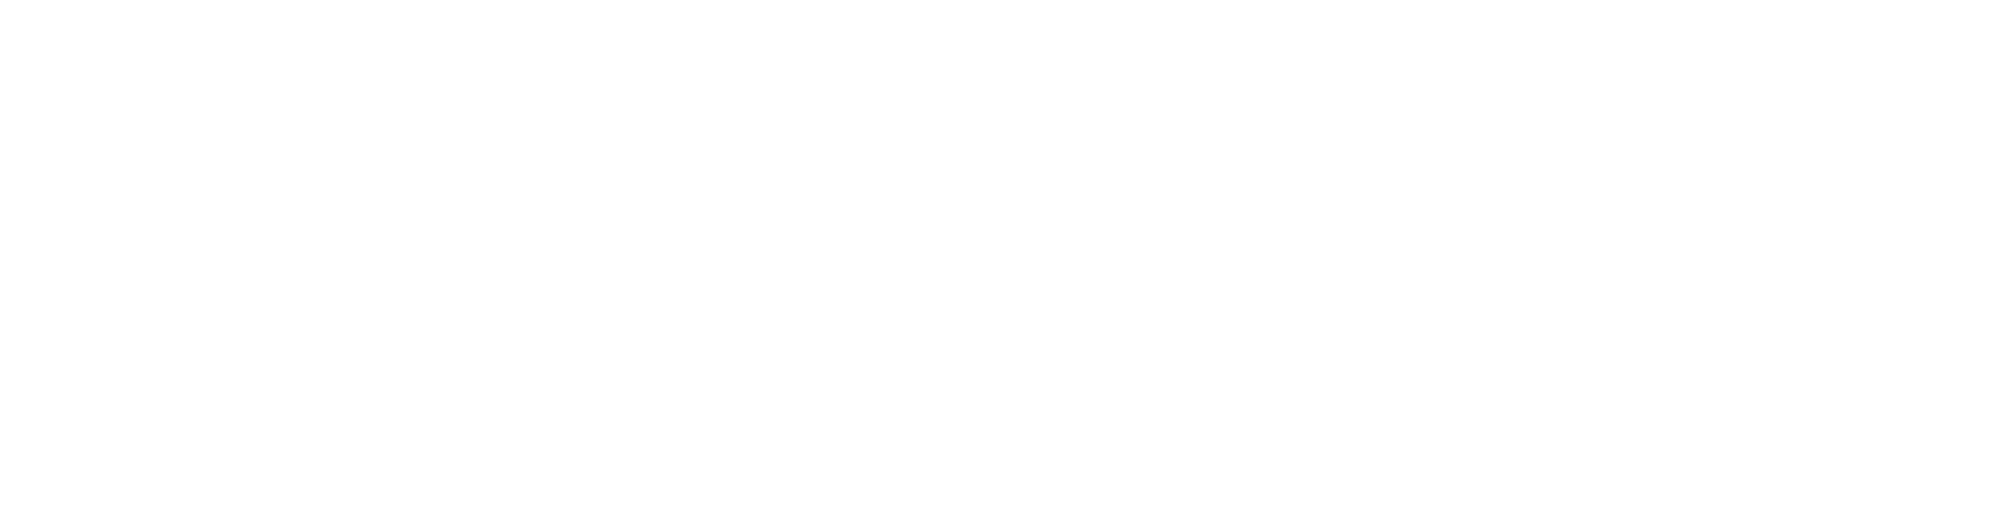 Atlas Growers logo